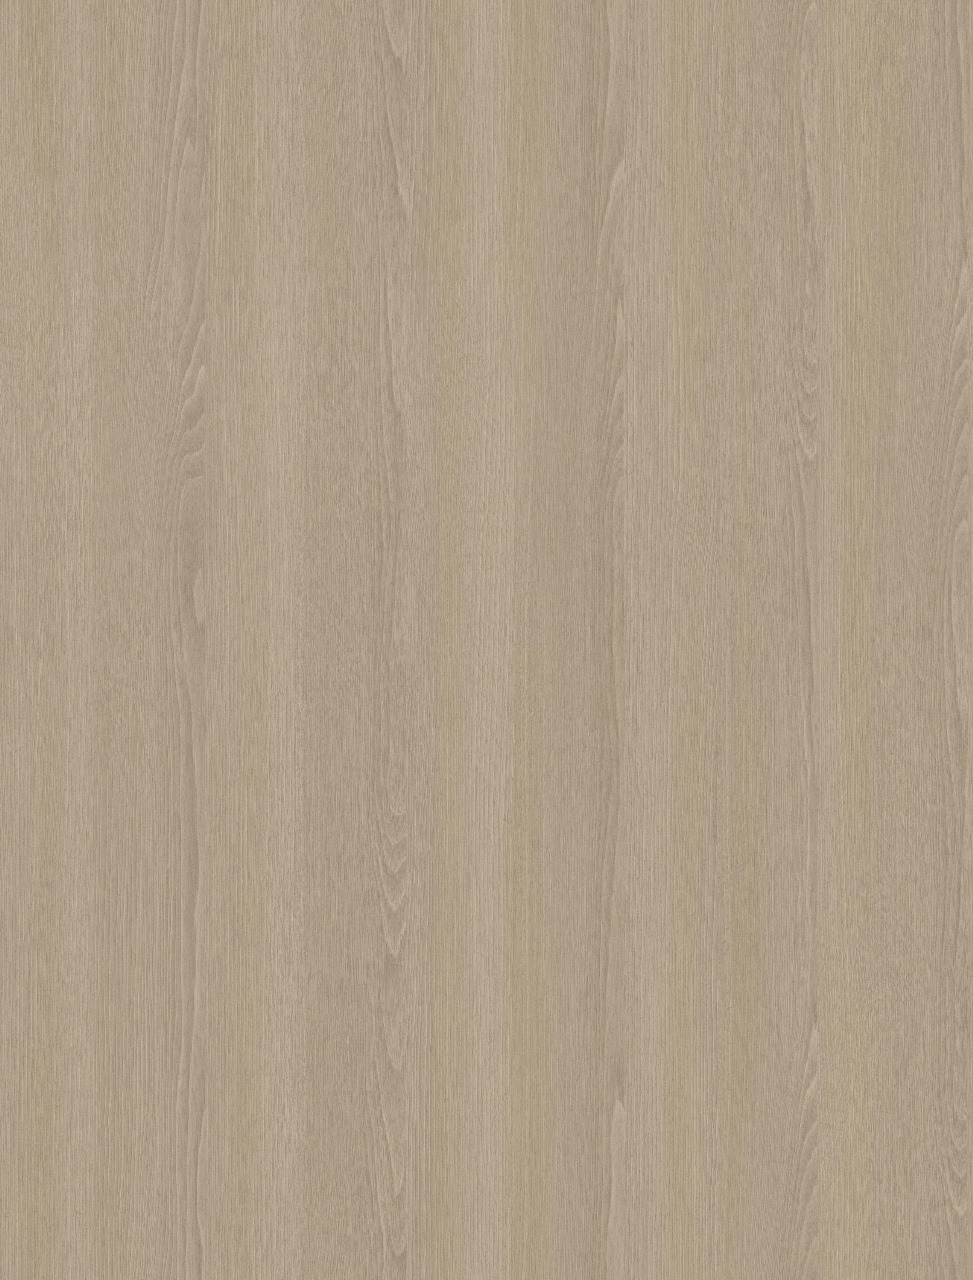 Бамбуковая панель MW022, 1200*2800*8мм, теснение дерева, светло-коричневый